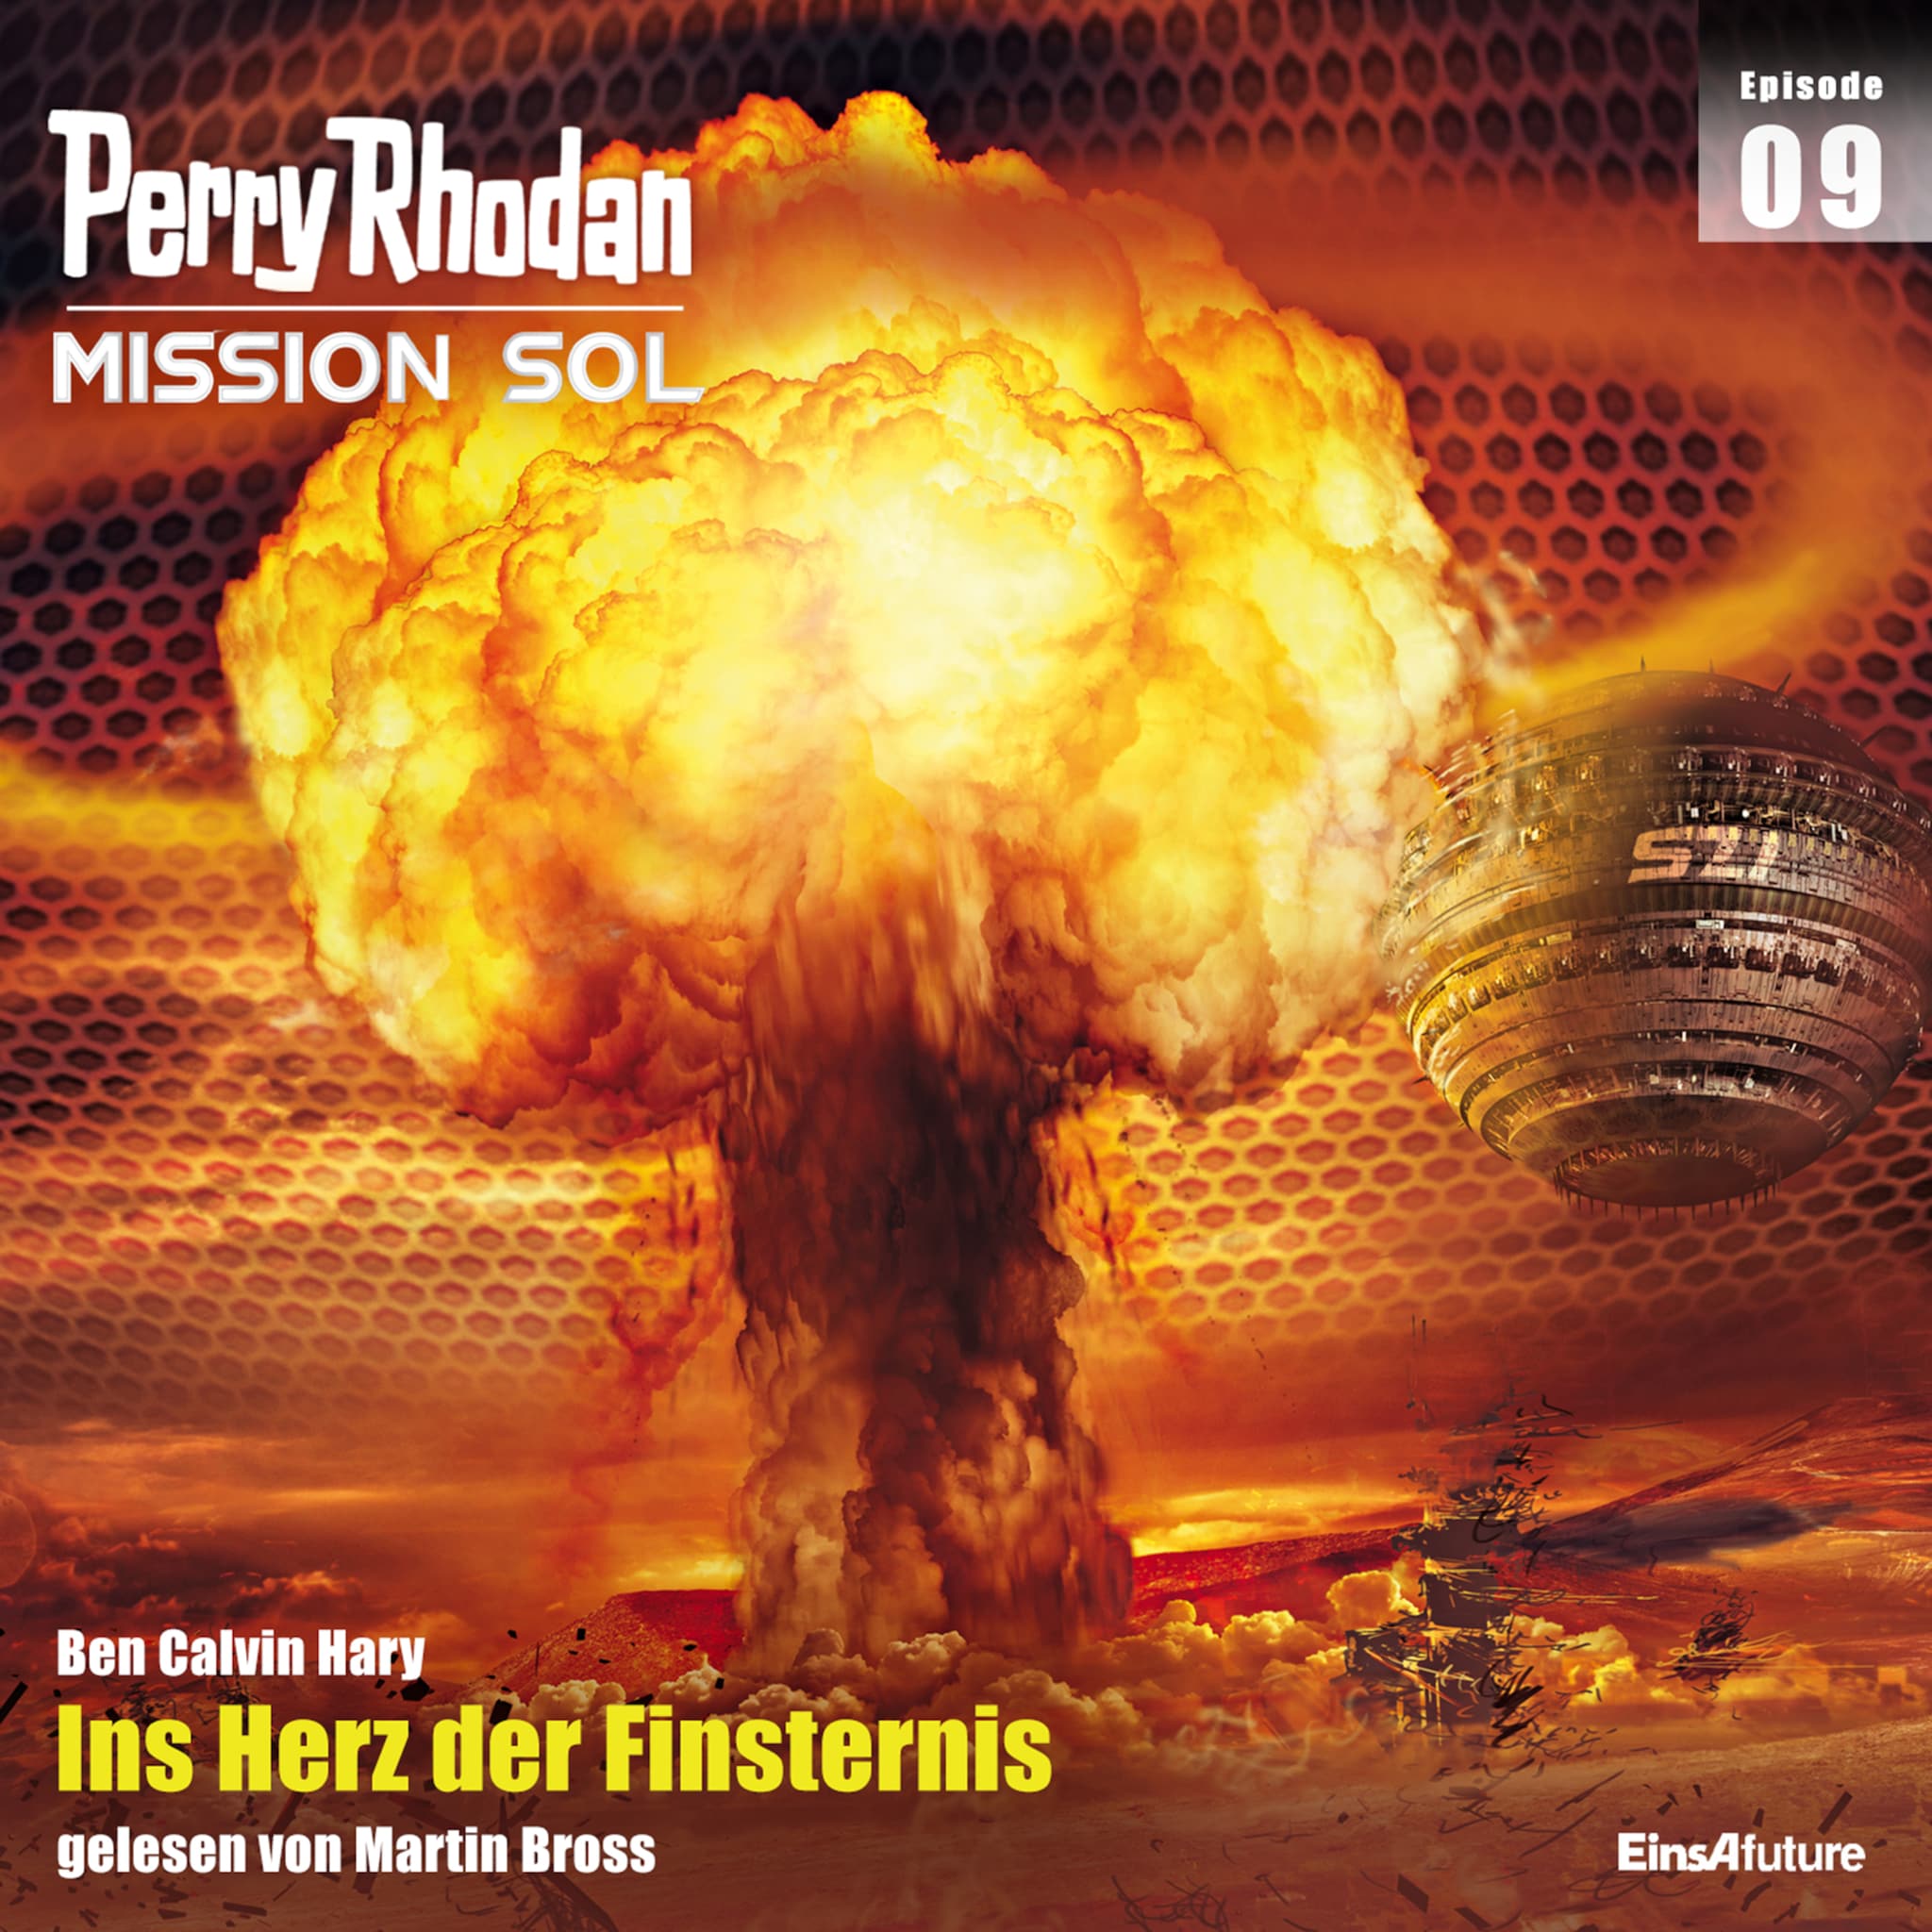 Perry Rhodan Mission SOL Episode 09: Ins Herz der Finsternis ilmaiseksi